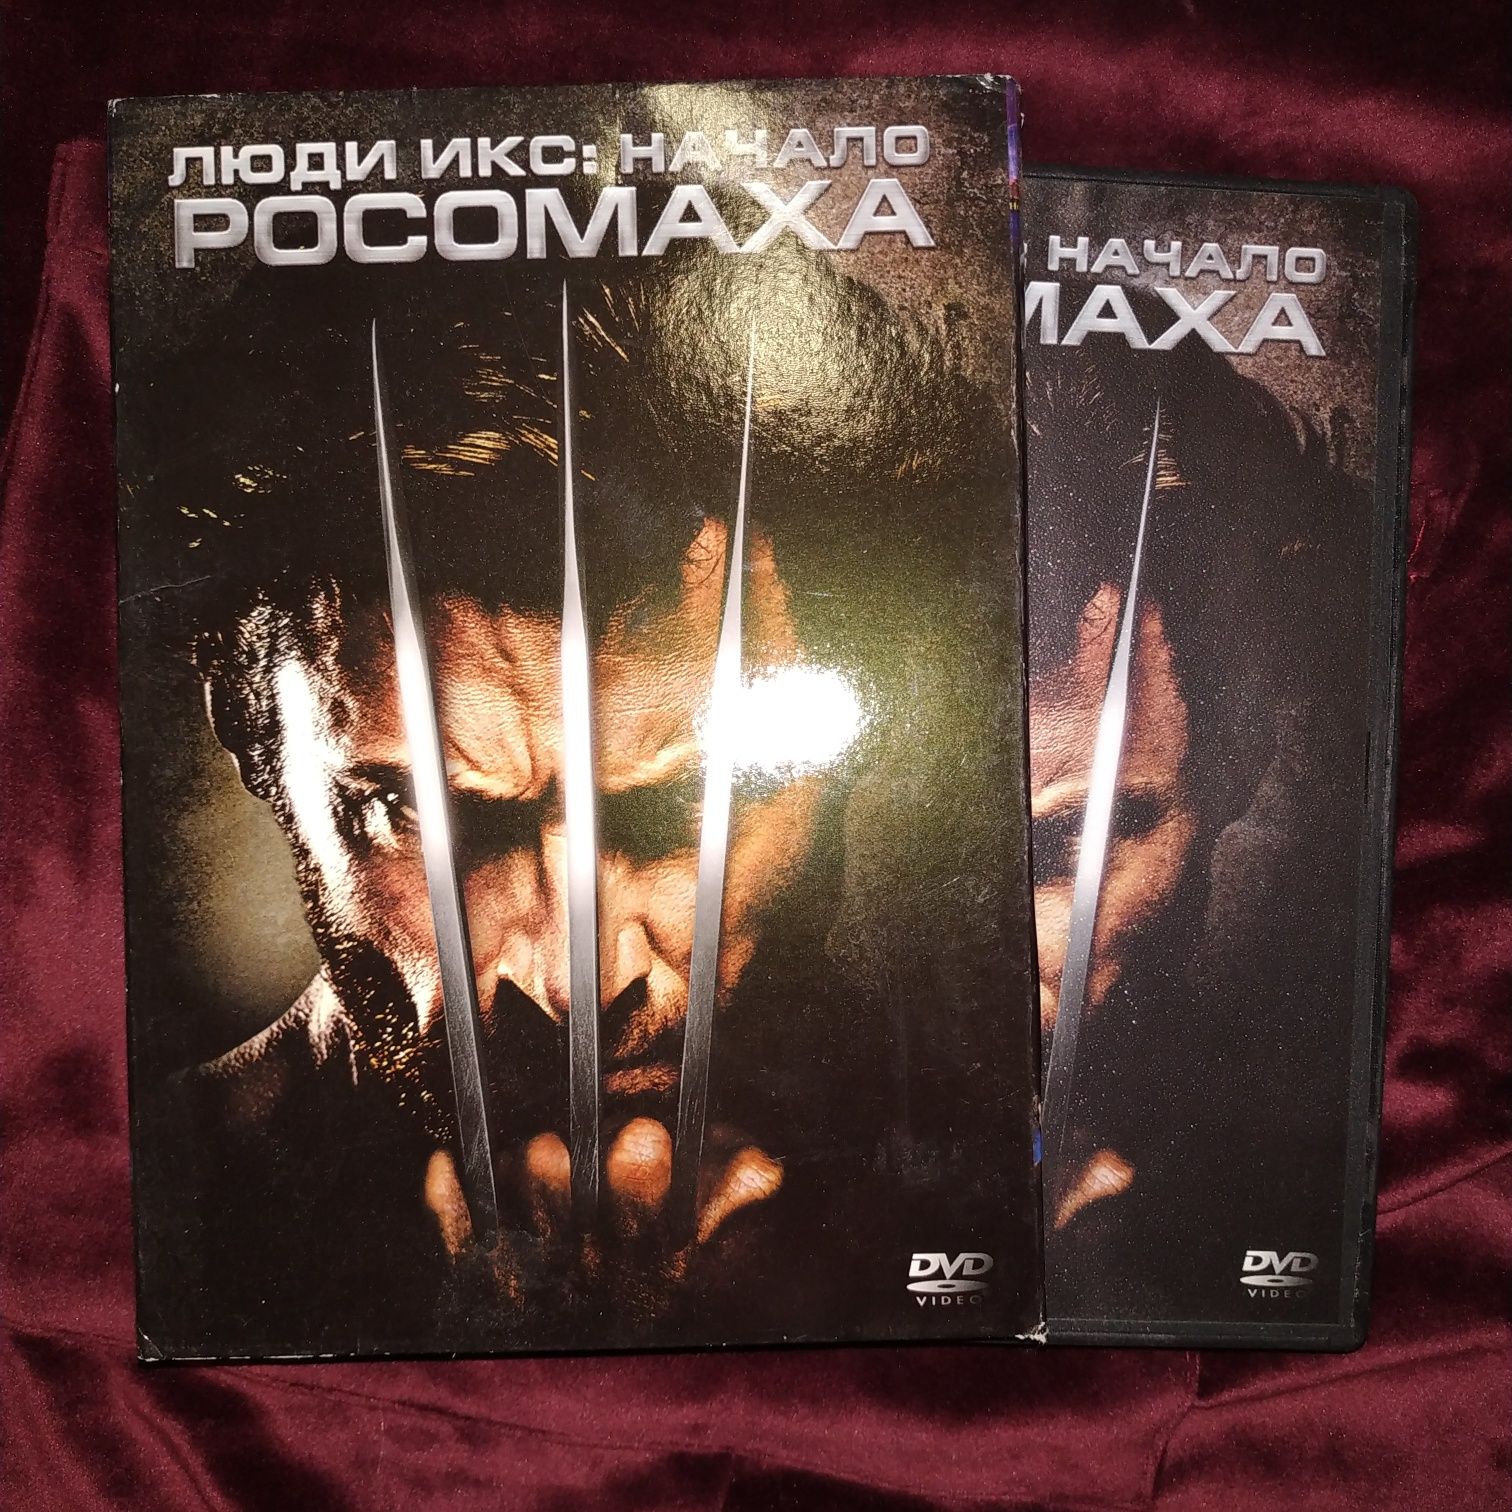 ДВД диск с фильмом Люди Икс: Начало Росомаха